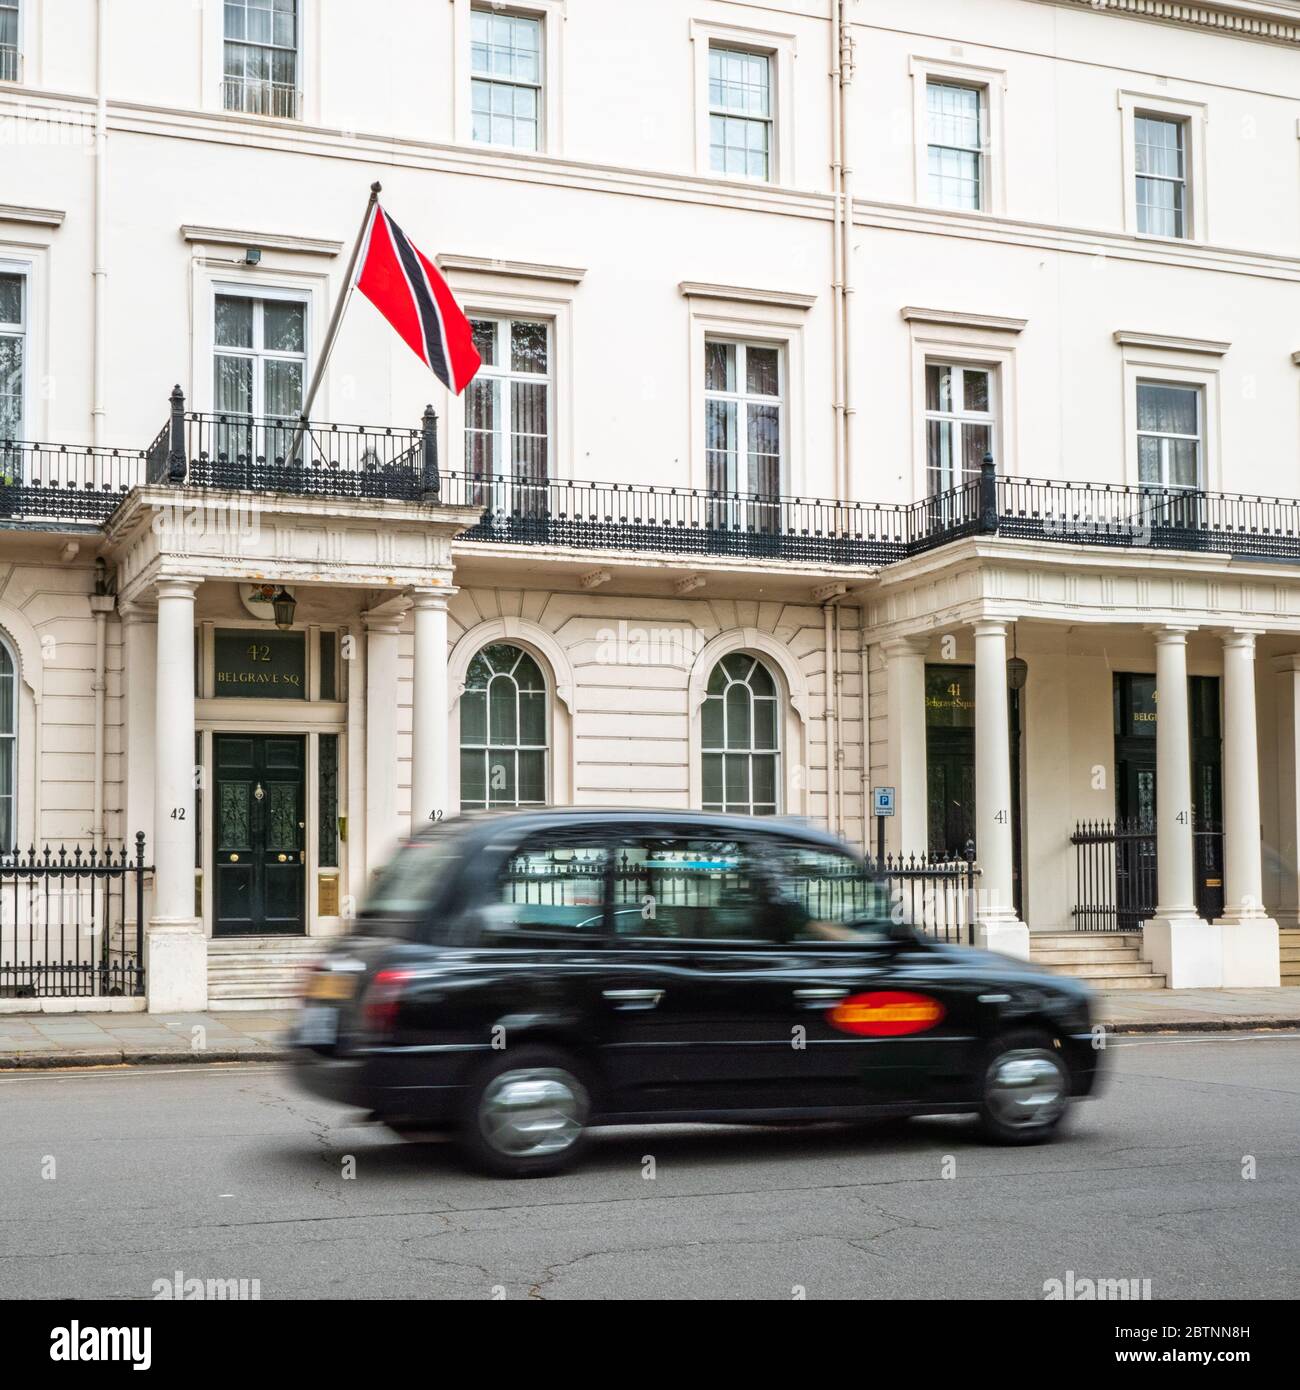 L'alta Commissione di Trinidad & Tobago a Belgravia, un distretto di Londra con un'alta concentrazione di ambasciate. Sfocatura del movimento sul taxi in primo piano. Foto Stock